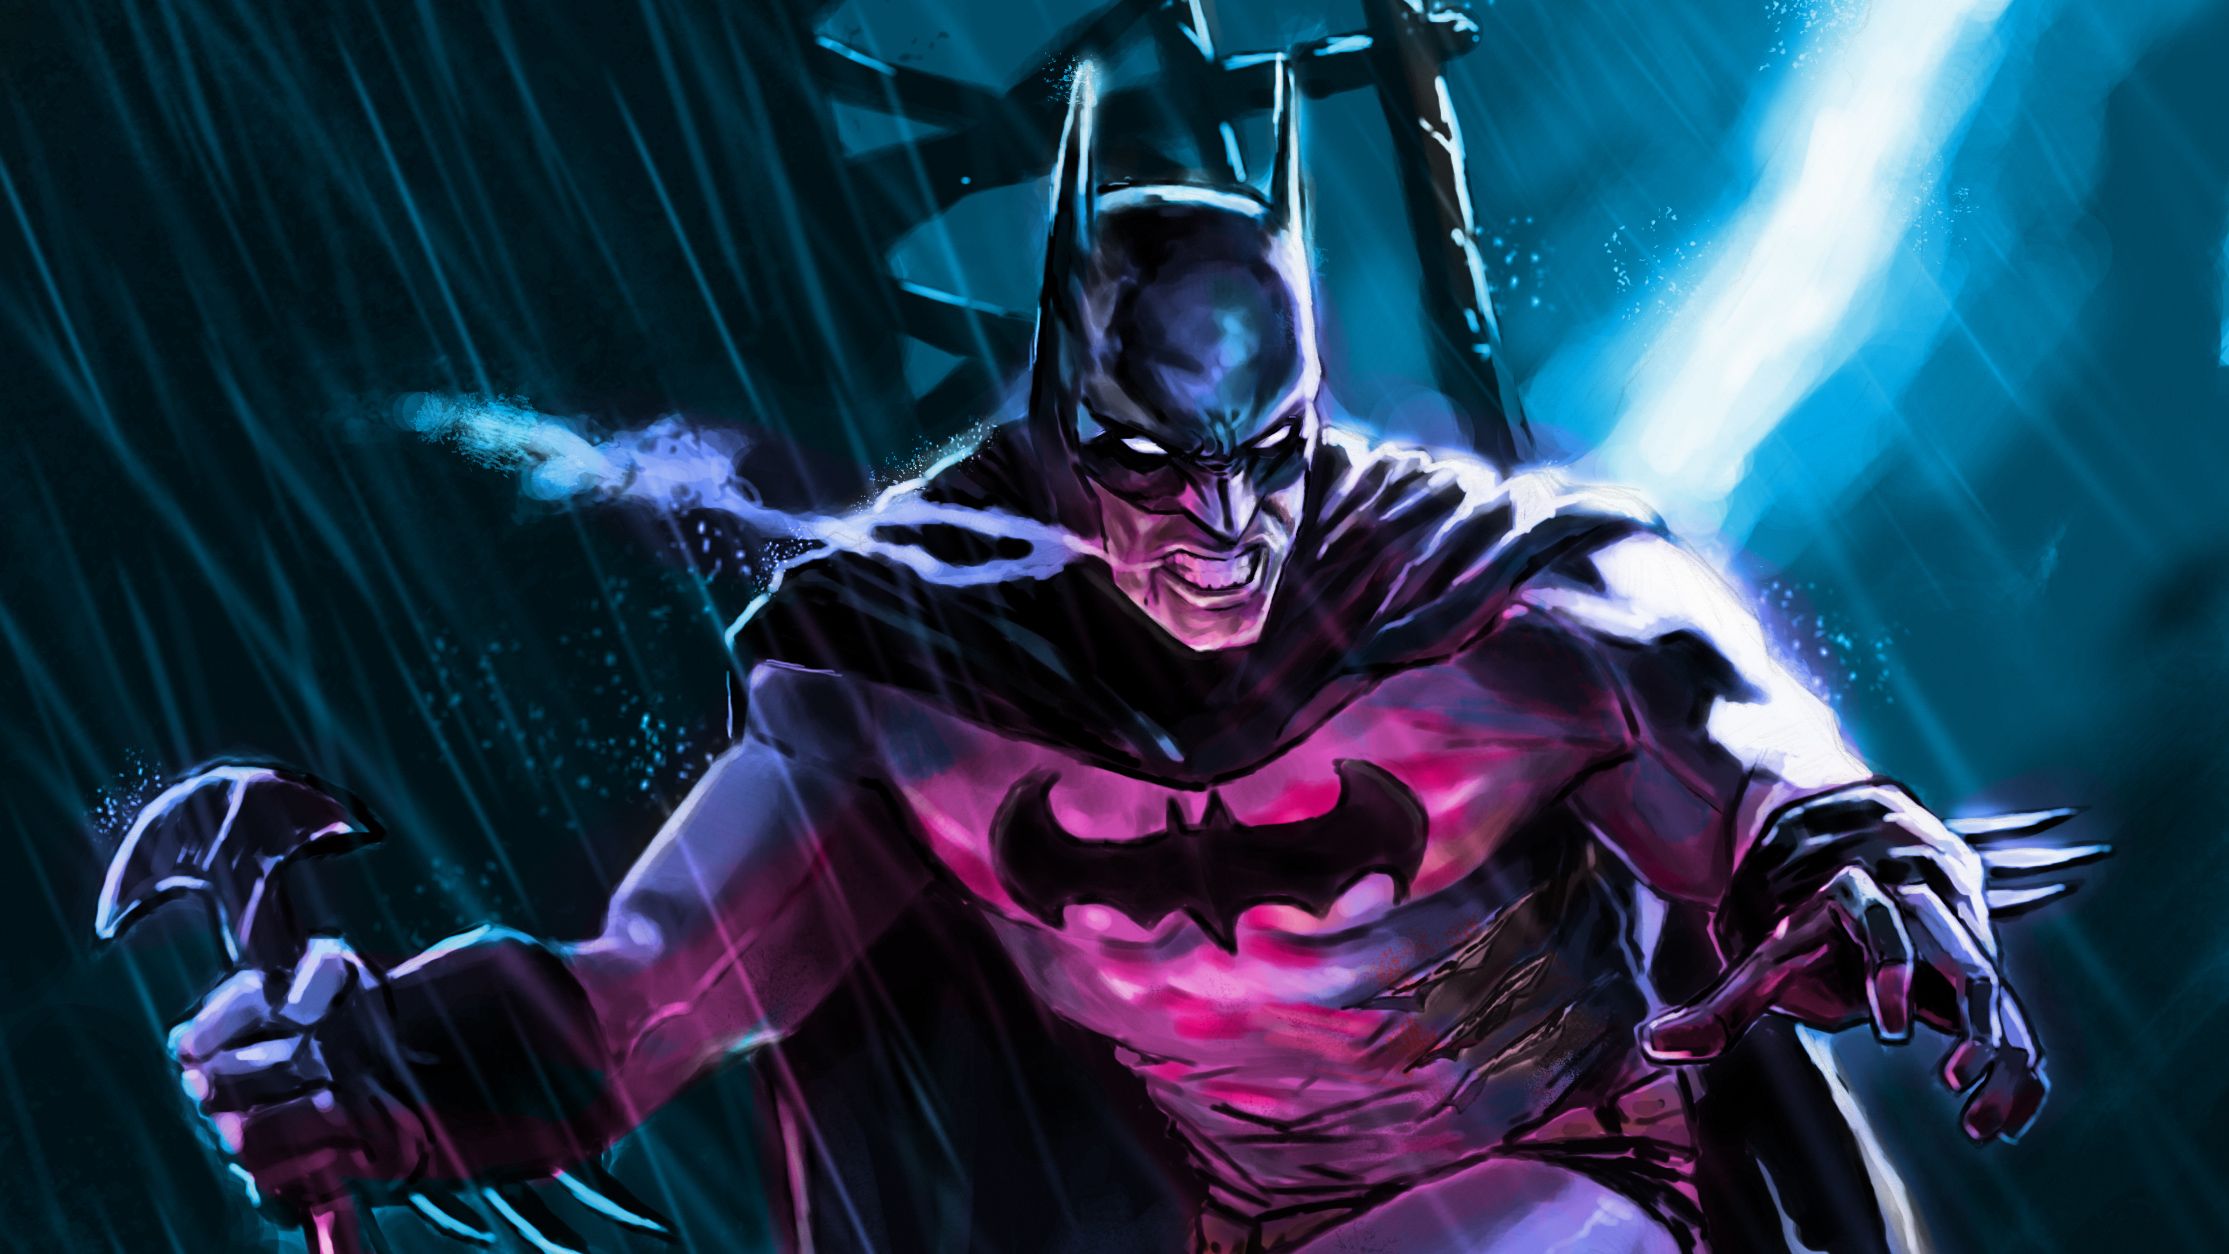 Wallpaper of Batman, DC, DC Comics, Comics, Art background & HD image